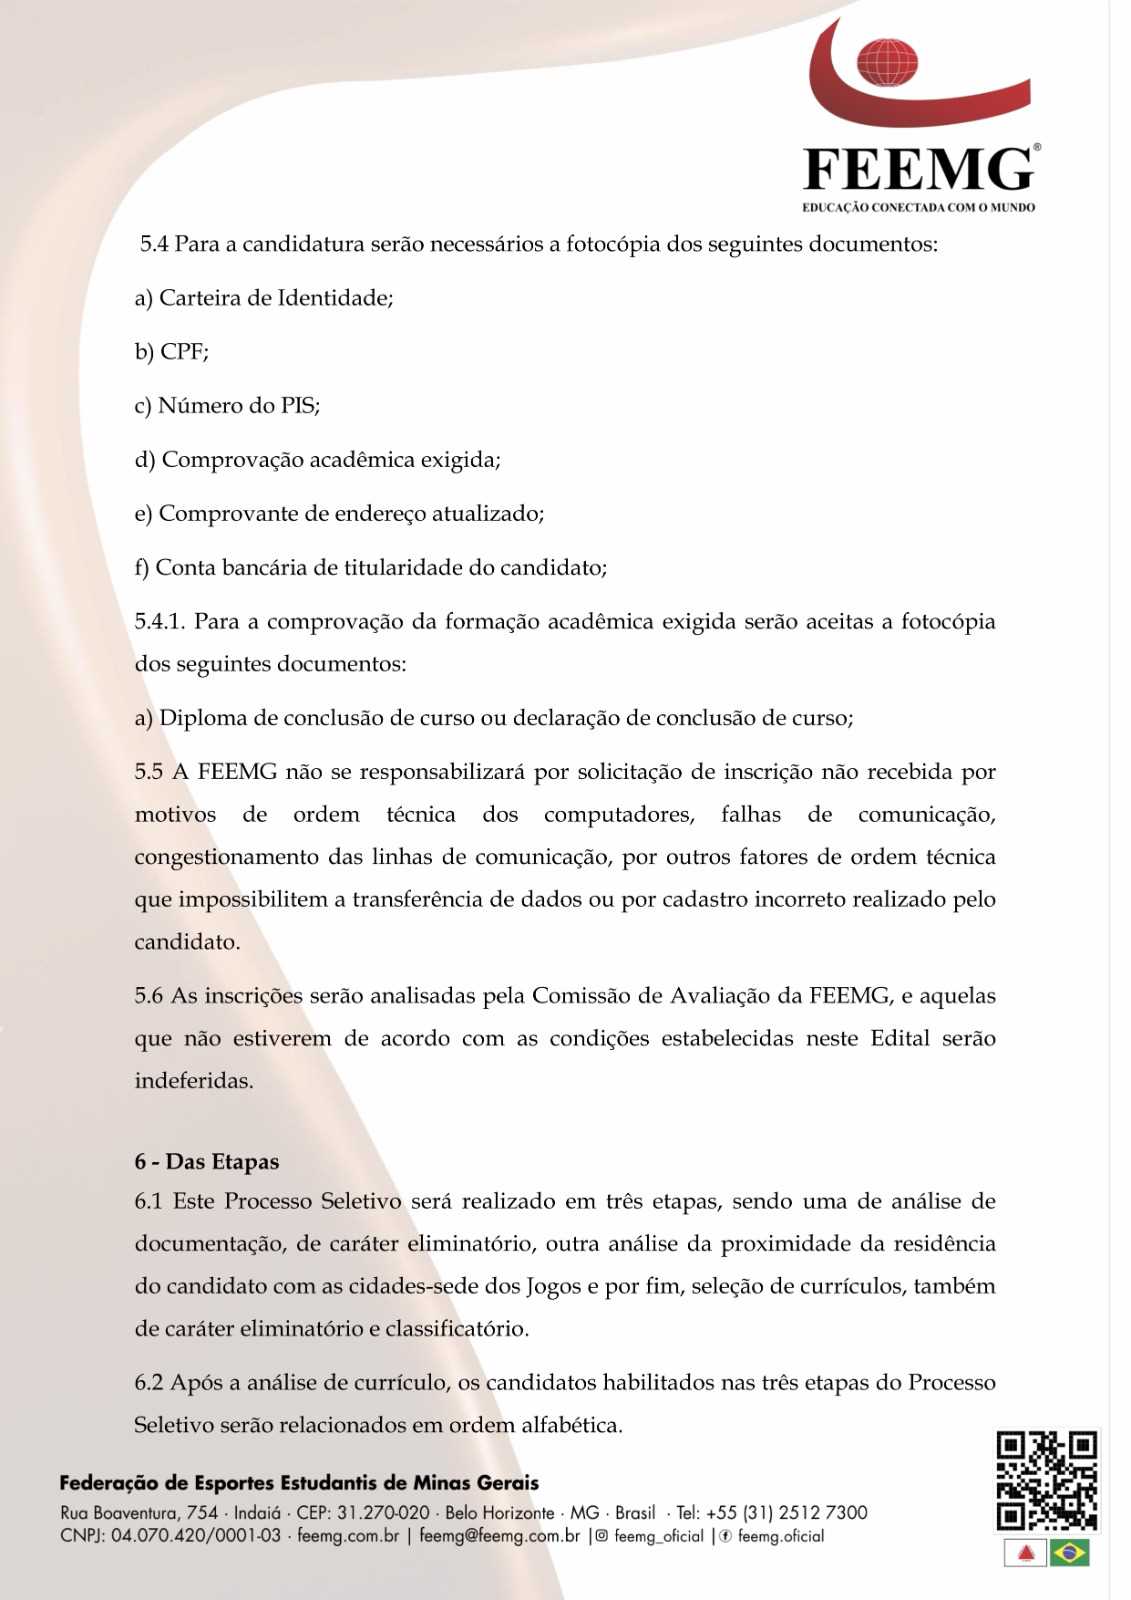 FEEMG  Acadêmica - FEEMG - Federação de Esportes Estudantis de Minas Gerais